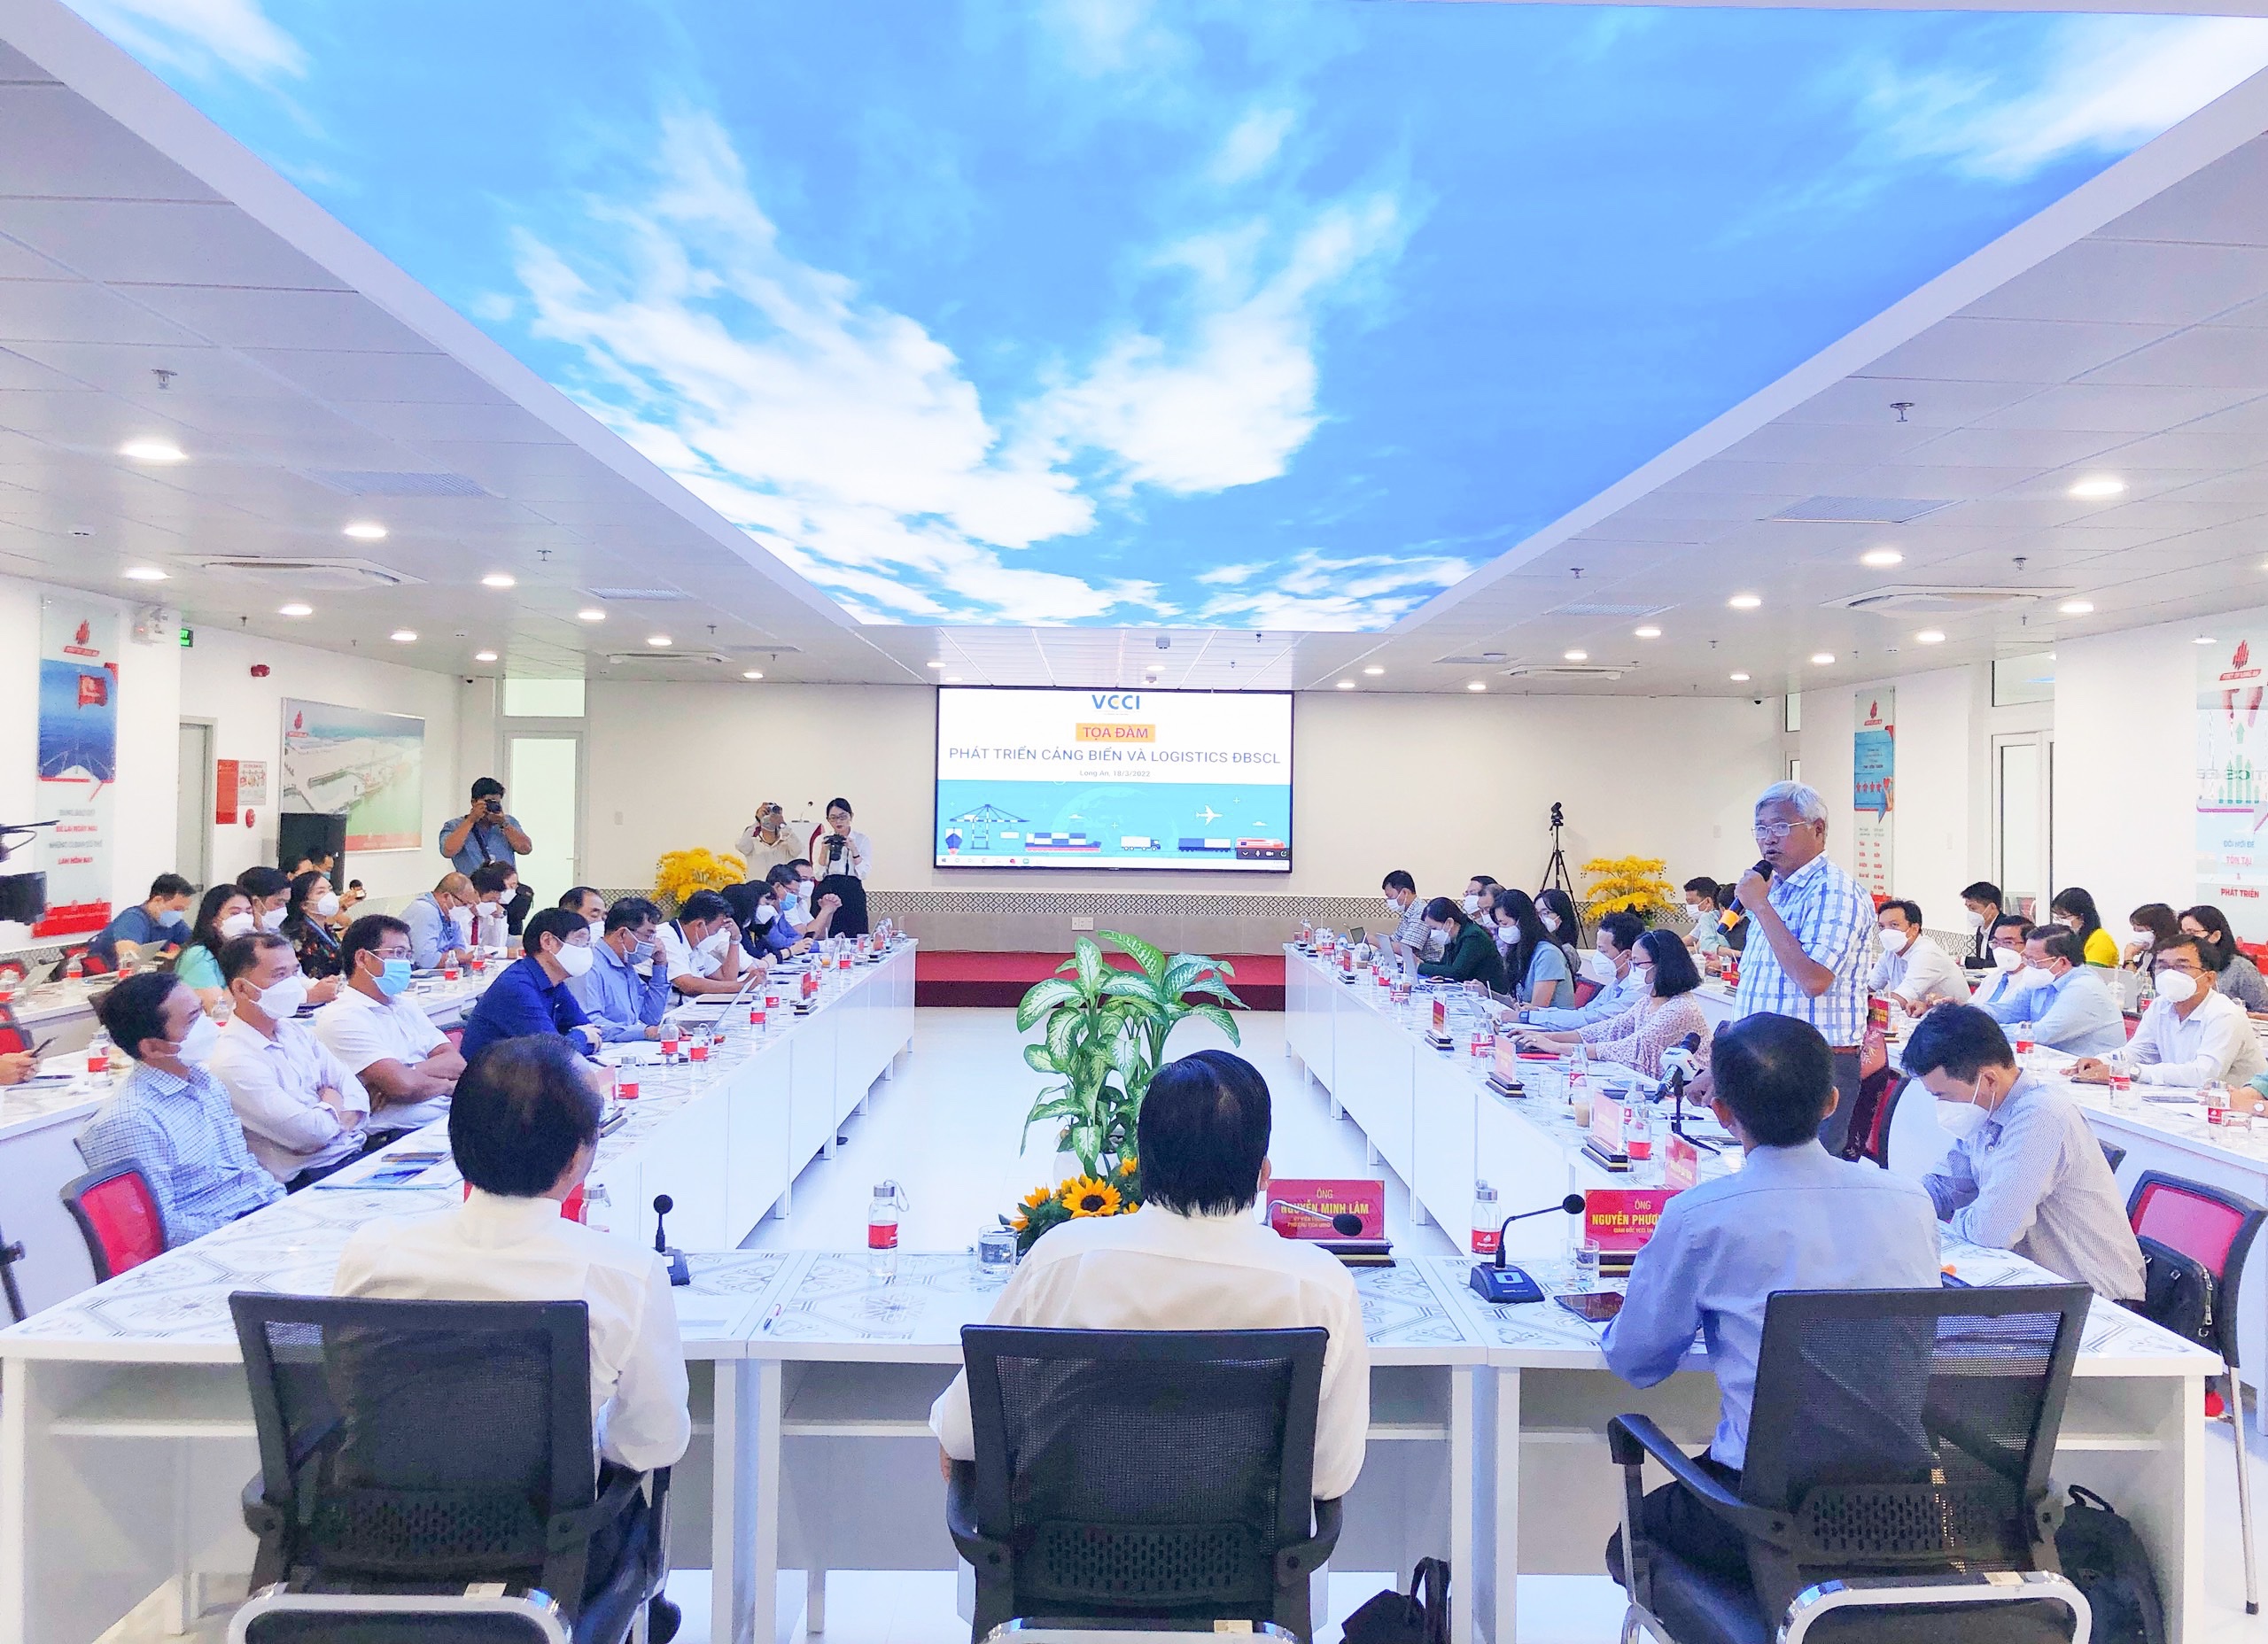 TM_Tham dự Hội nghị Kết nối doanh nghiệp Logistics trong lĩnh vực thương mại điện tử của Sở Công thương tỉnh Long An